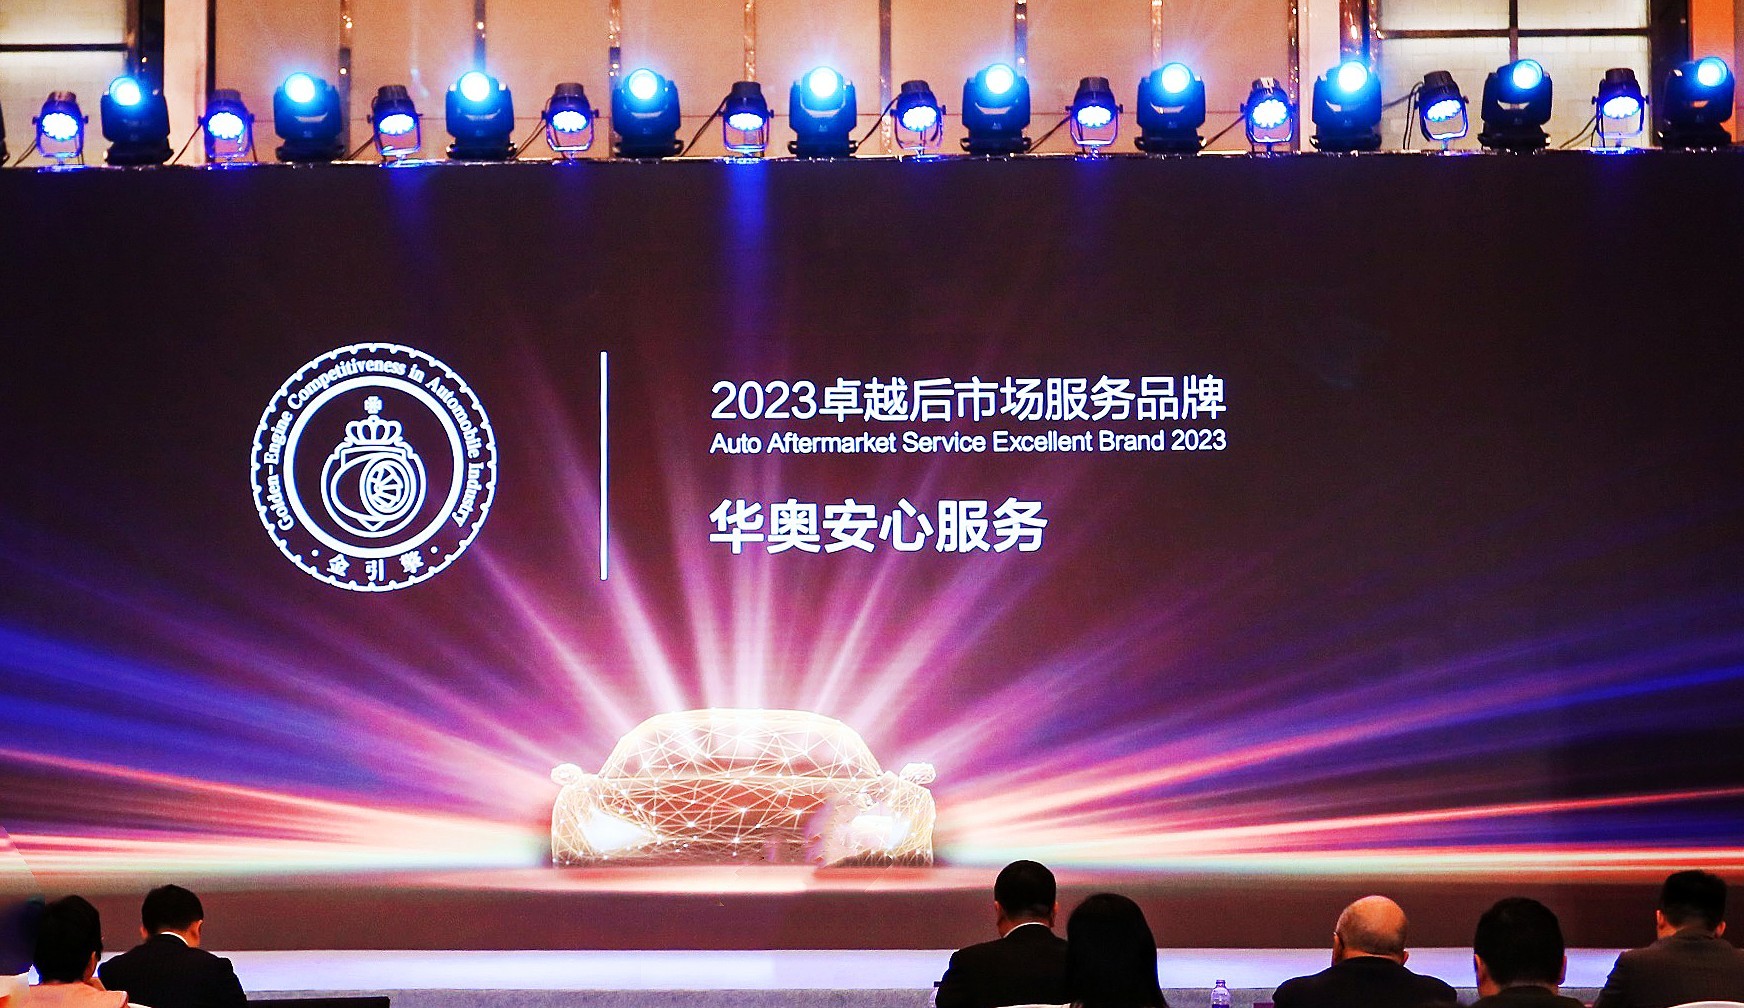 融合创新|华奥集团摘得 “「金引擎」2023卓越后市场服务品牌”奖项